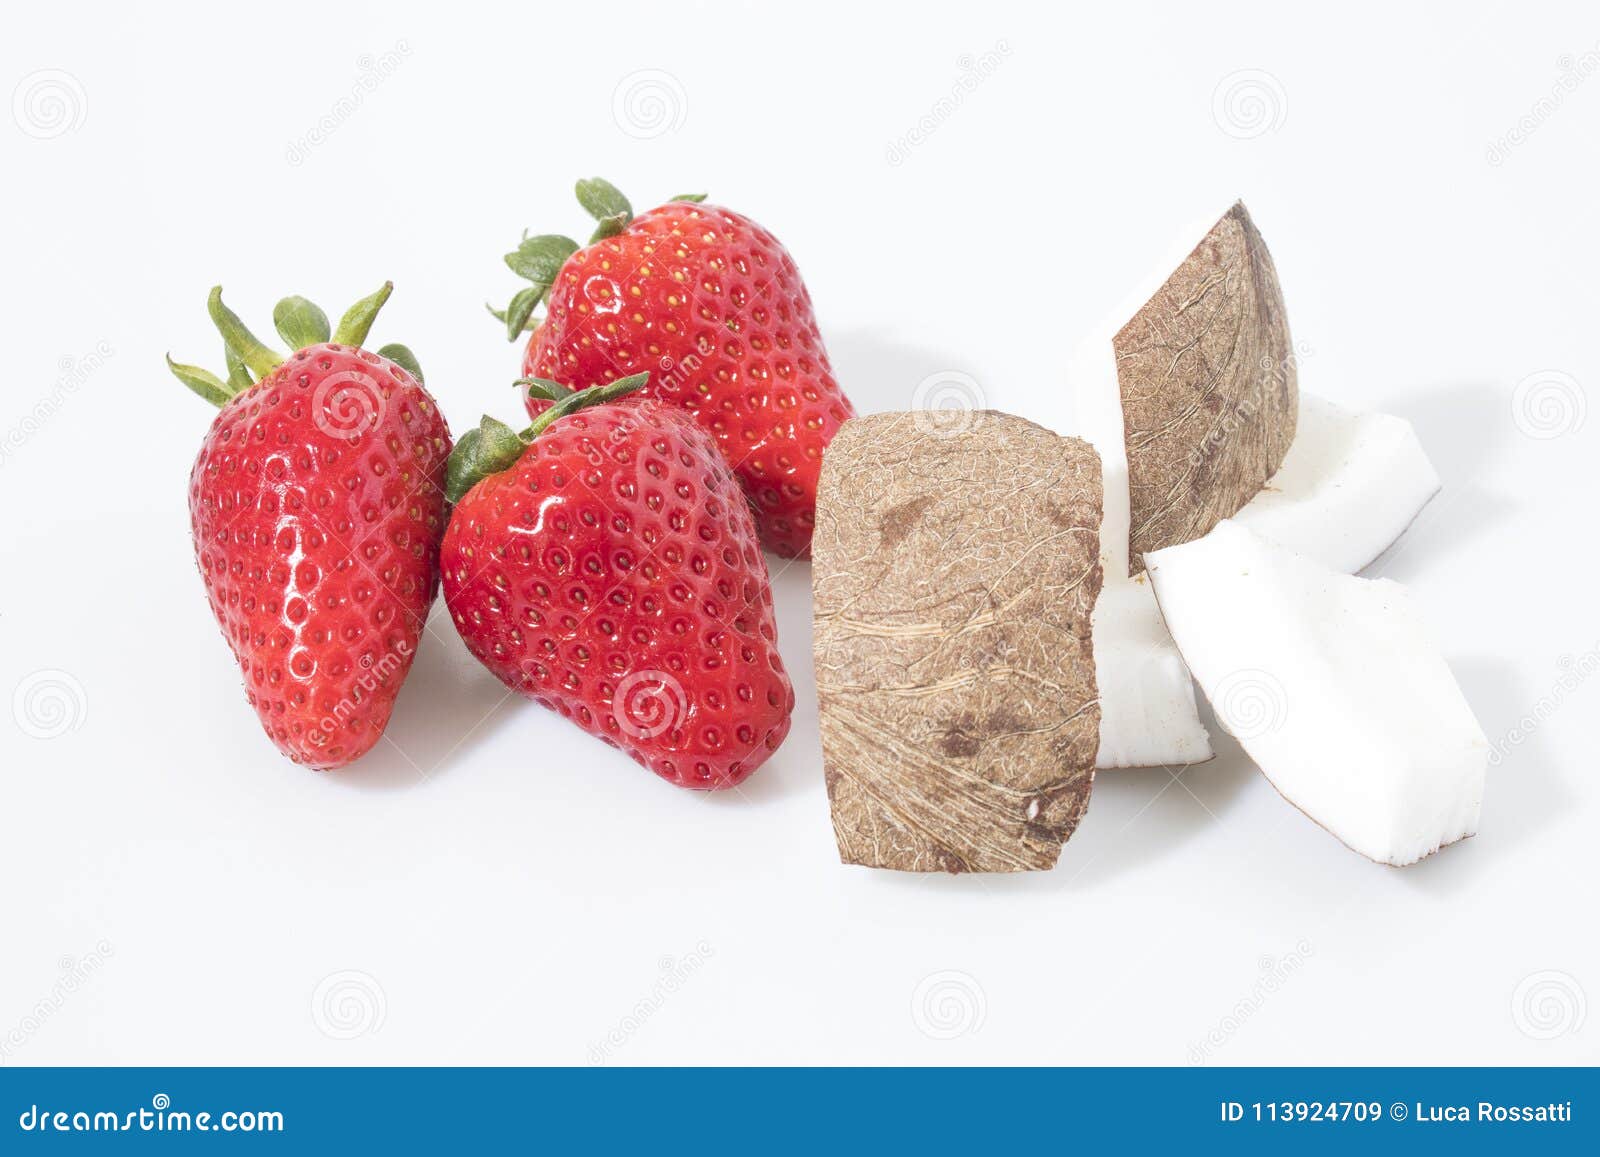 Erdbeeren und Kokosnusszusammensetzung in einem weißen Hintergrund. Erdbeeren und Kokosnuss in einer weißen Hintergrundzusammensetzung